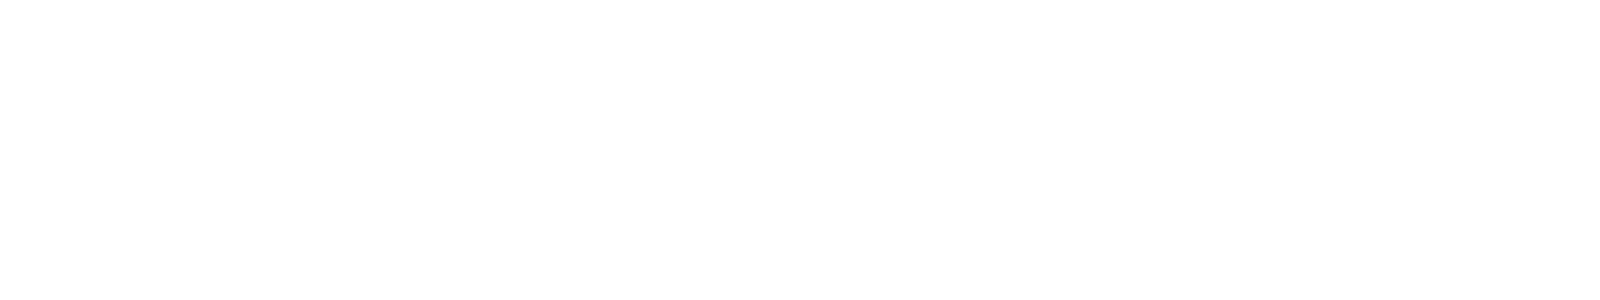 s7law logo biale2 - Karta Dużej Rodziny 40% Zniżki